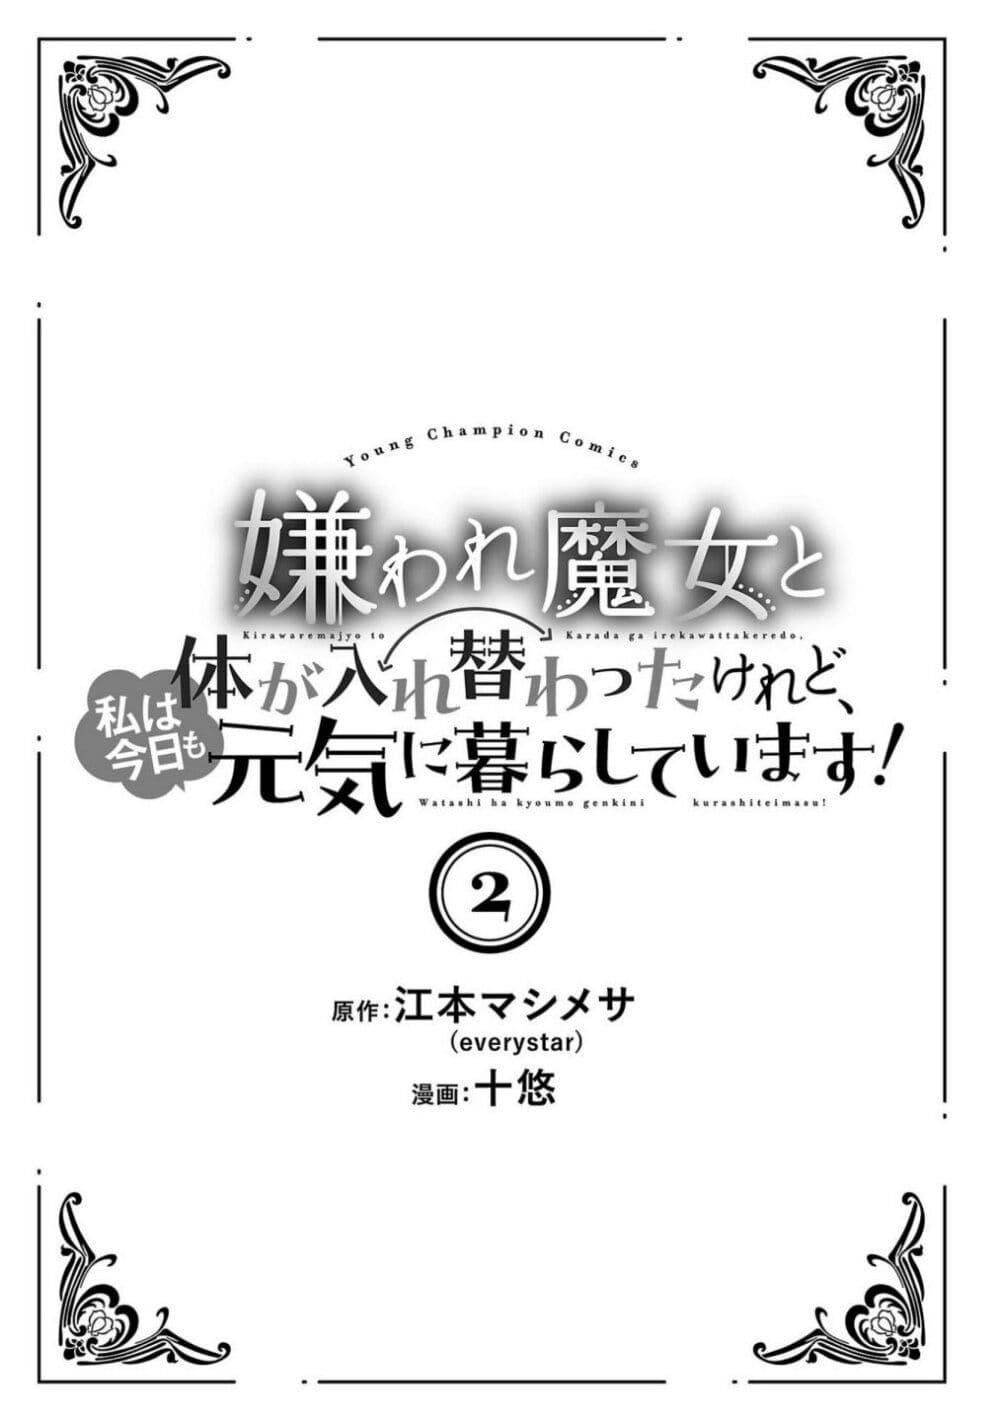 อ่านการ์ตูน Kiraware Majo to Karada ga Irekawatta Keredo, Watashi wa Kyou mo Genki ni Kurashiteimasu! 6 ภาพที่ 2